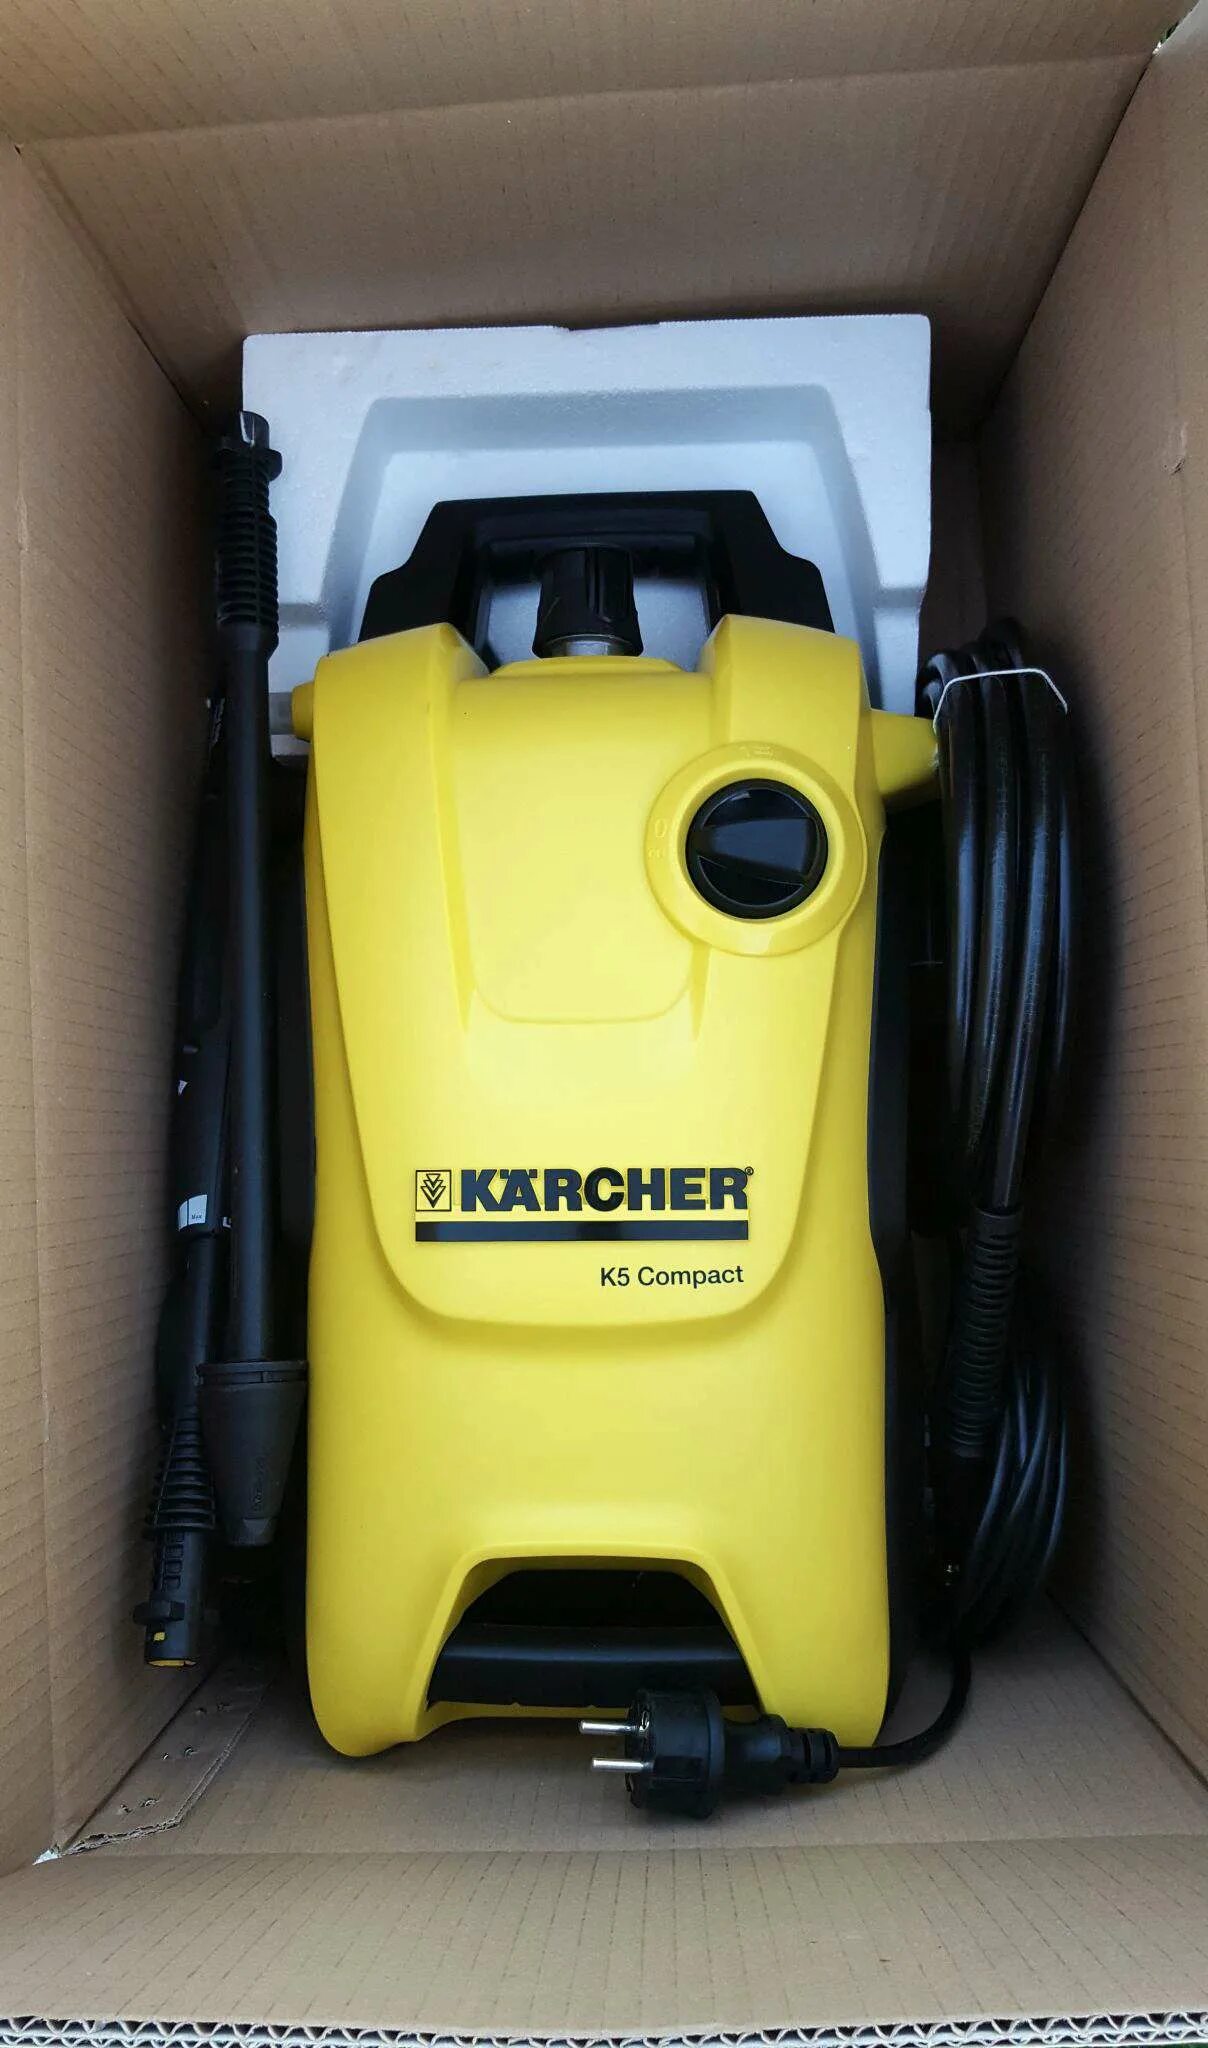 Мойка Karcher k 5 Compact. Минимойка Karcher к5 Compact. Мойка высокого давления Karcher к 5. 1.630-720.0 Karcher k 5 Compact. Мойка 5 компакт